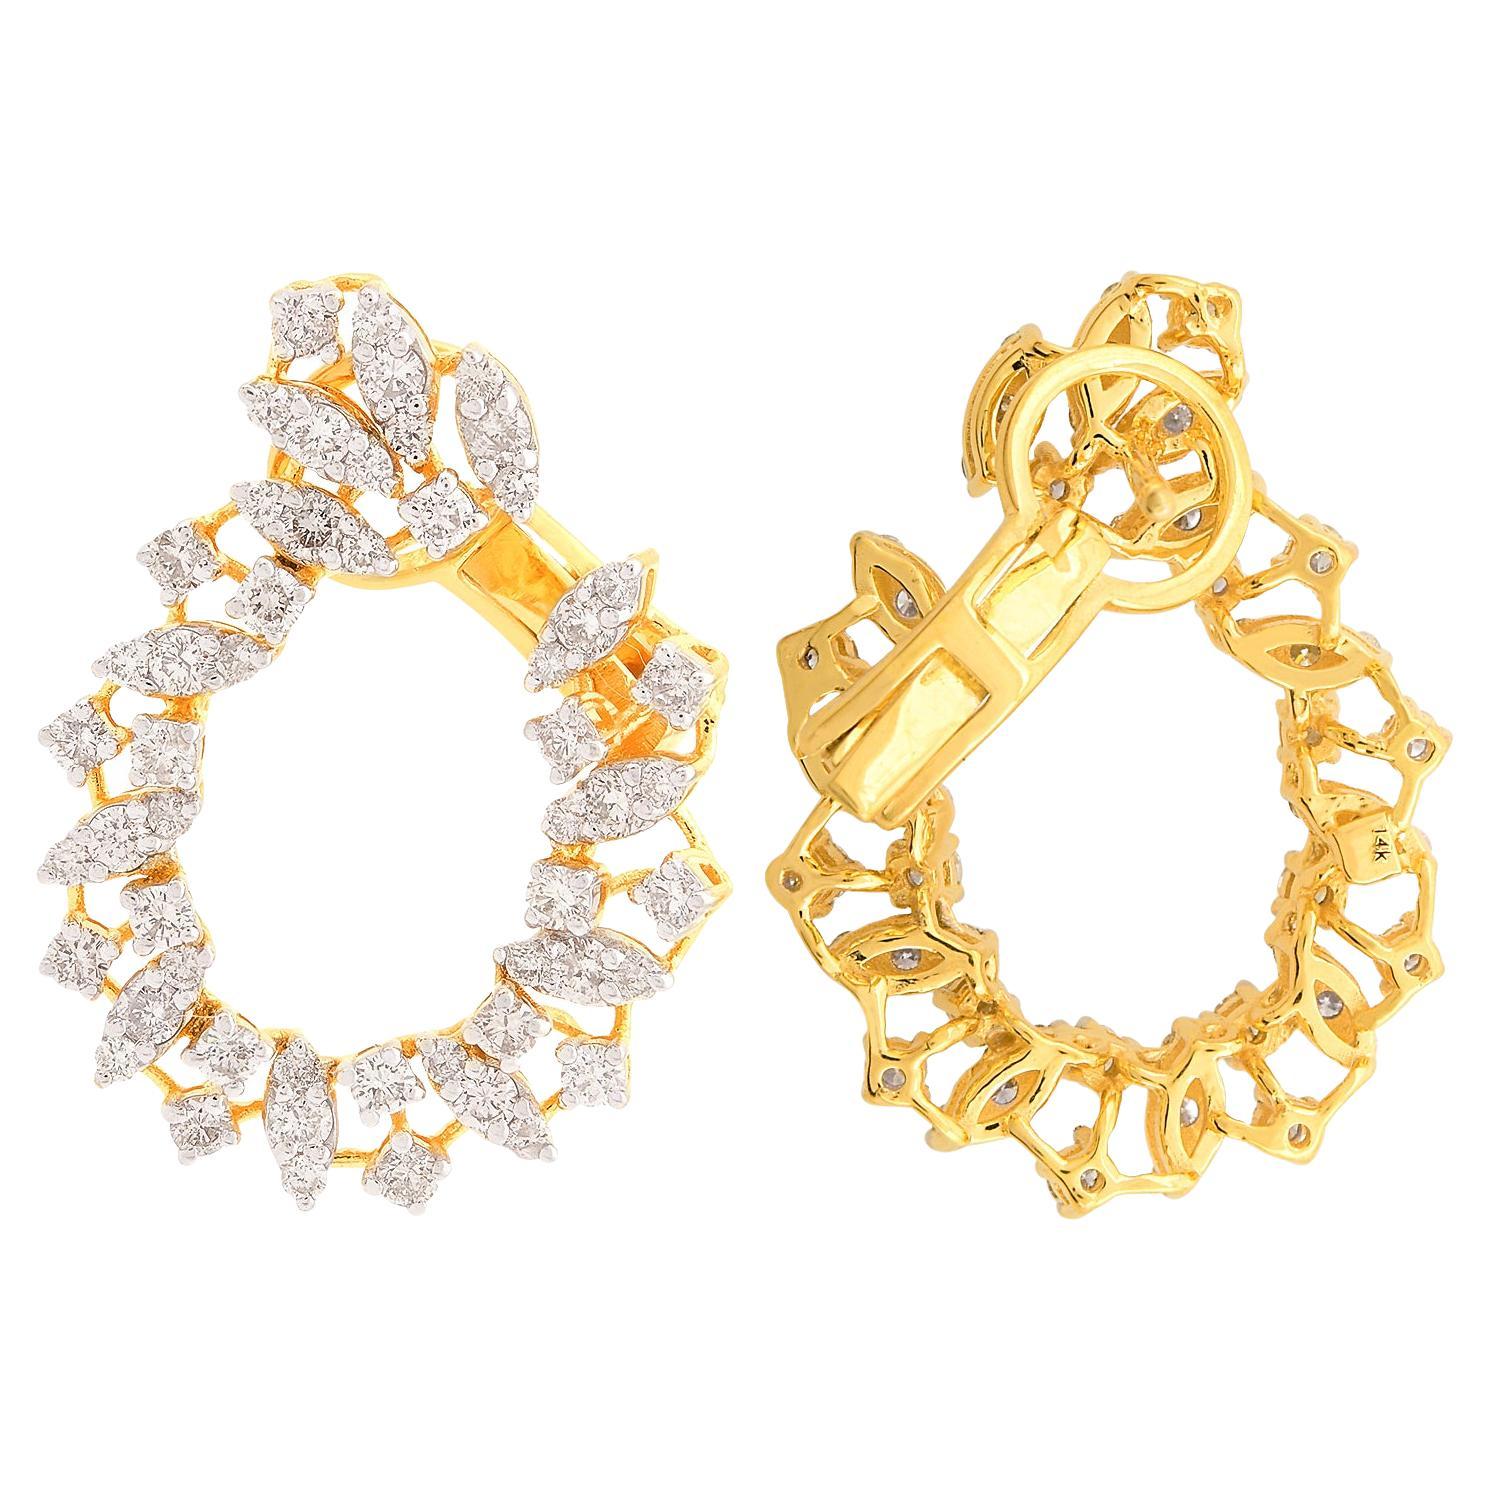 Boucles d'oreilles en or jaune 14k avec diamants de 2,07 carats, pureté SI, couleur HI.